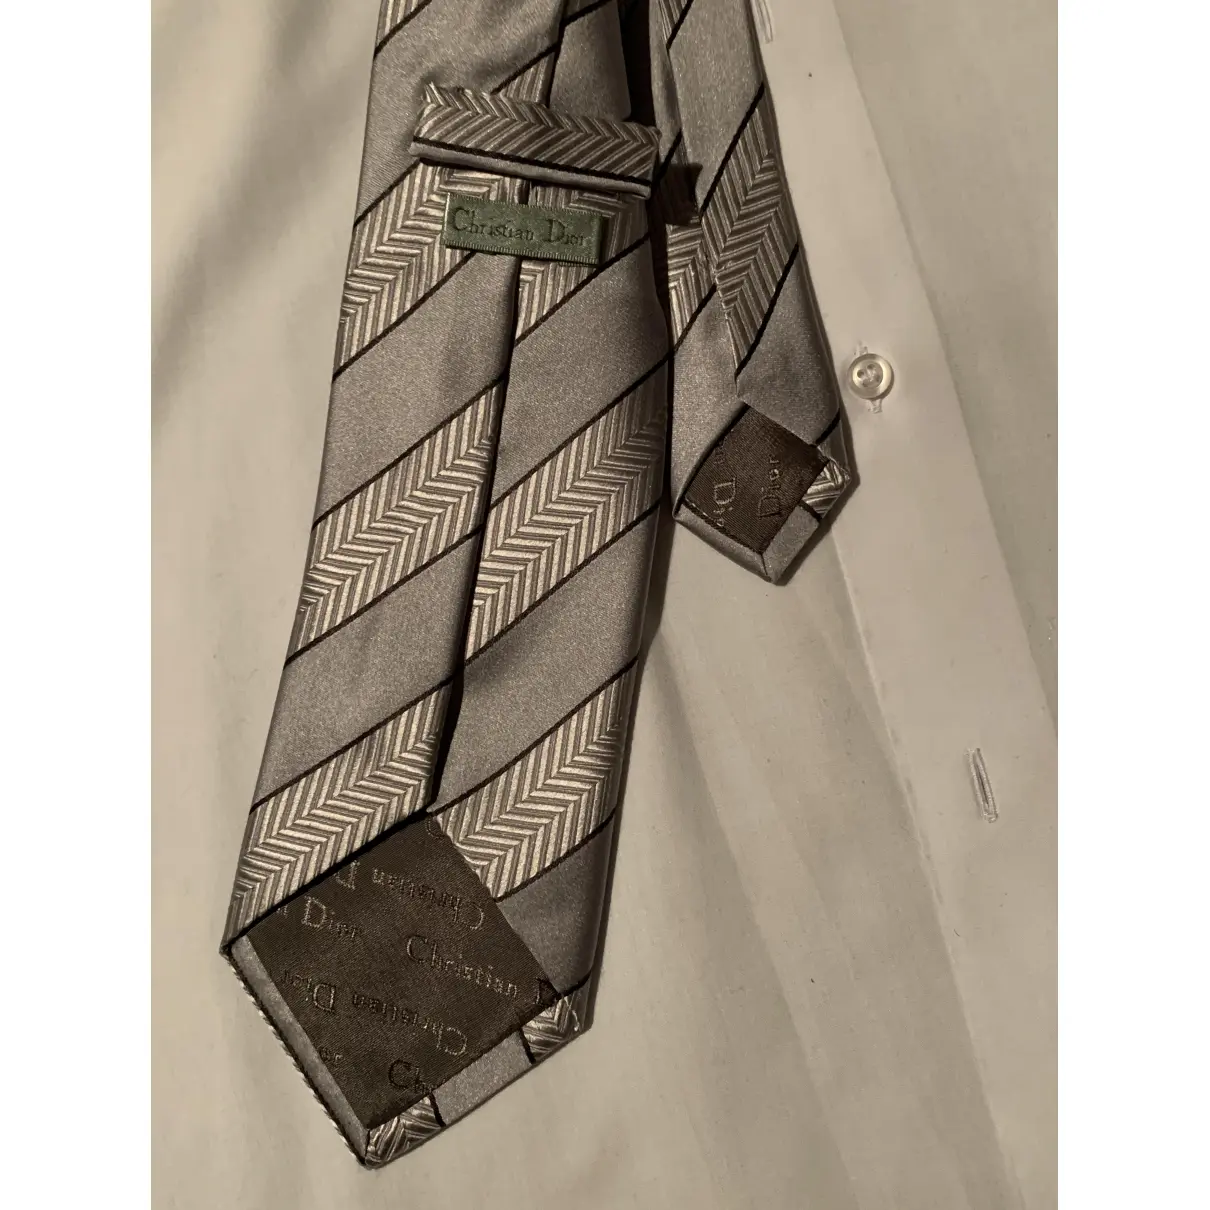 Dior Silk tie for sale - Vintage